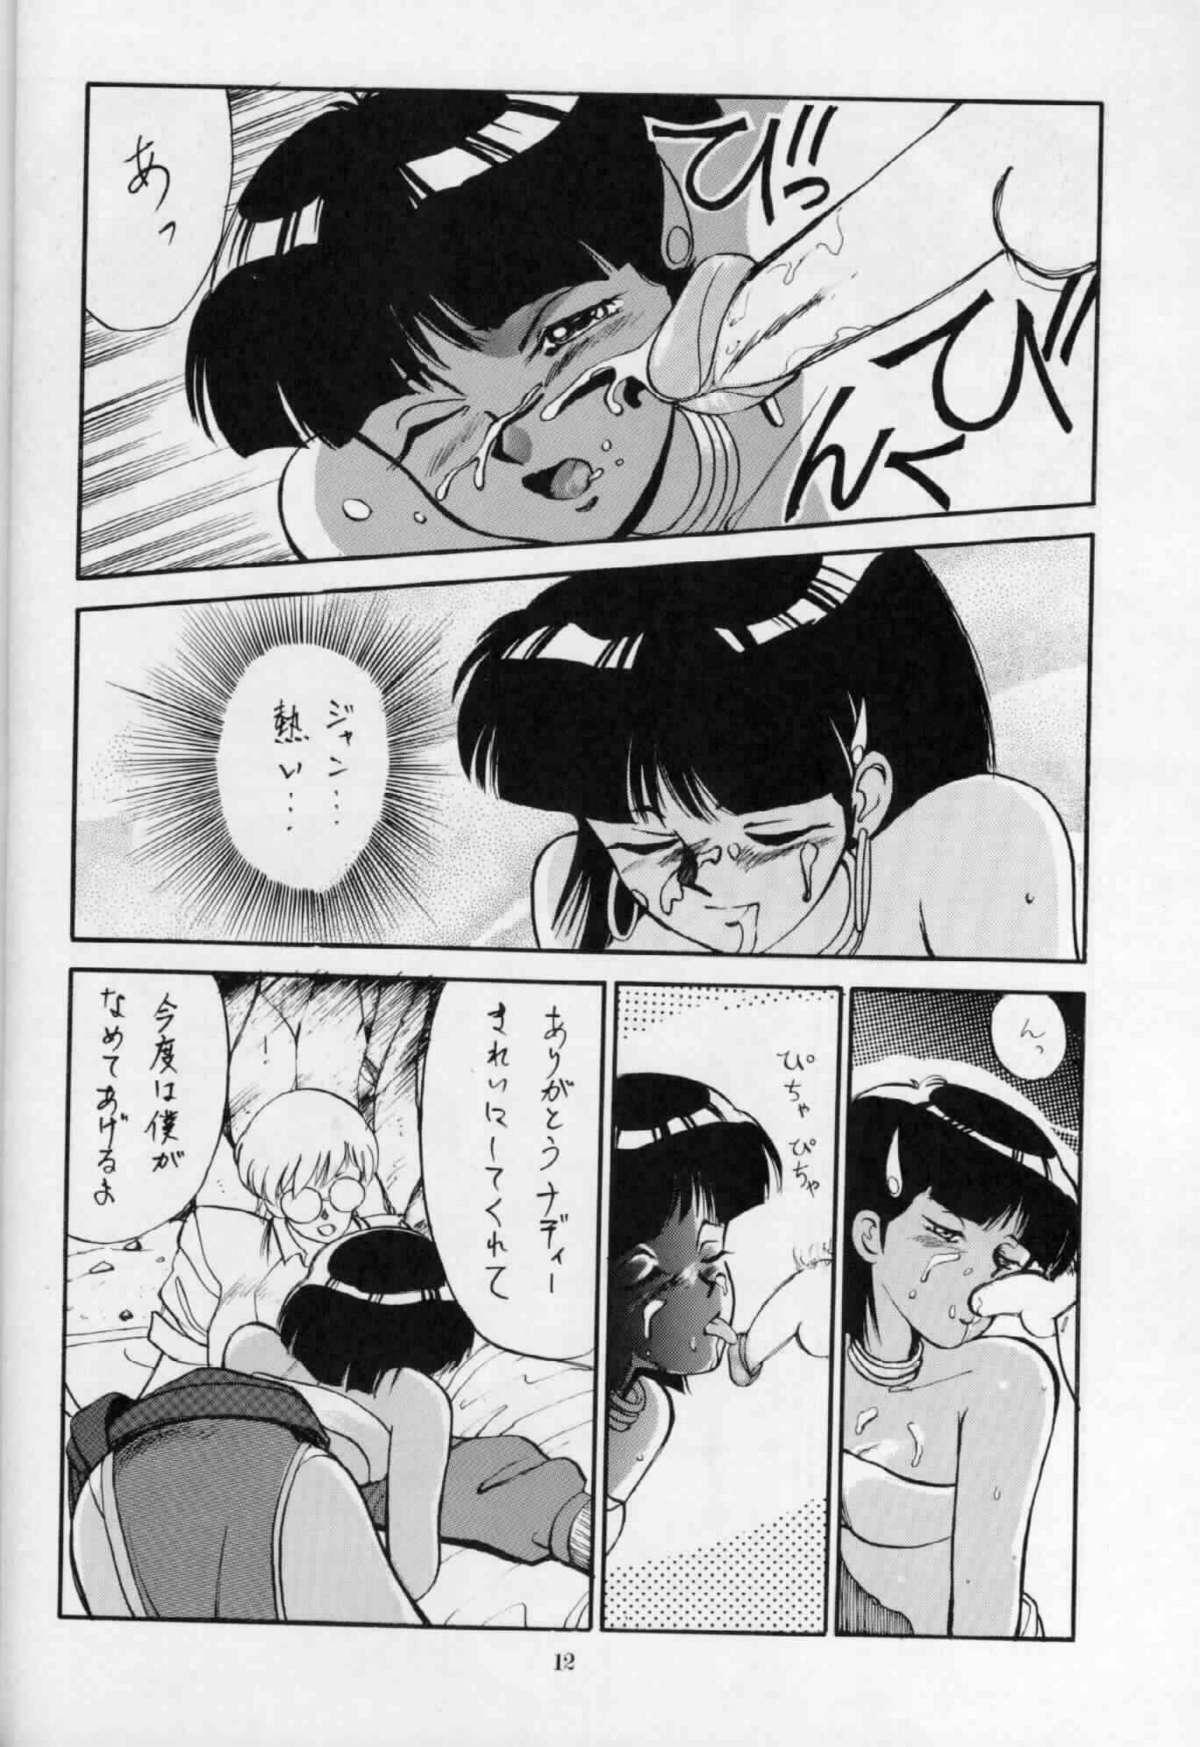 Bribe 'T' no Wagamama 'F' no Yuutsu 2 - Fushigi no umi no nadia Gordinha - Page 11